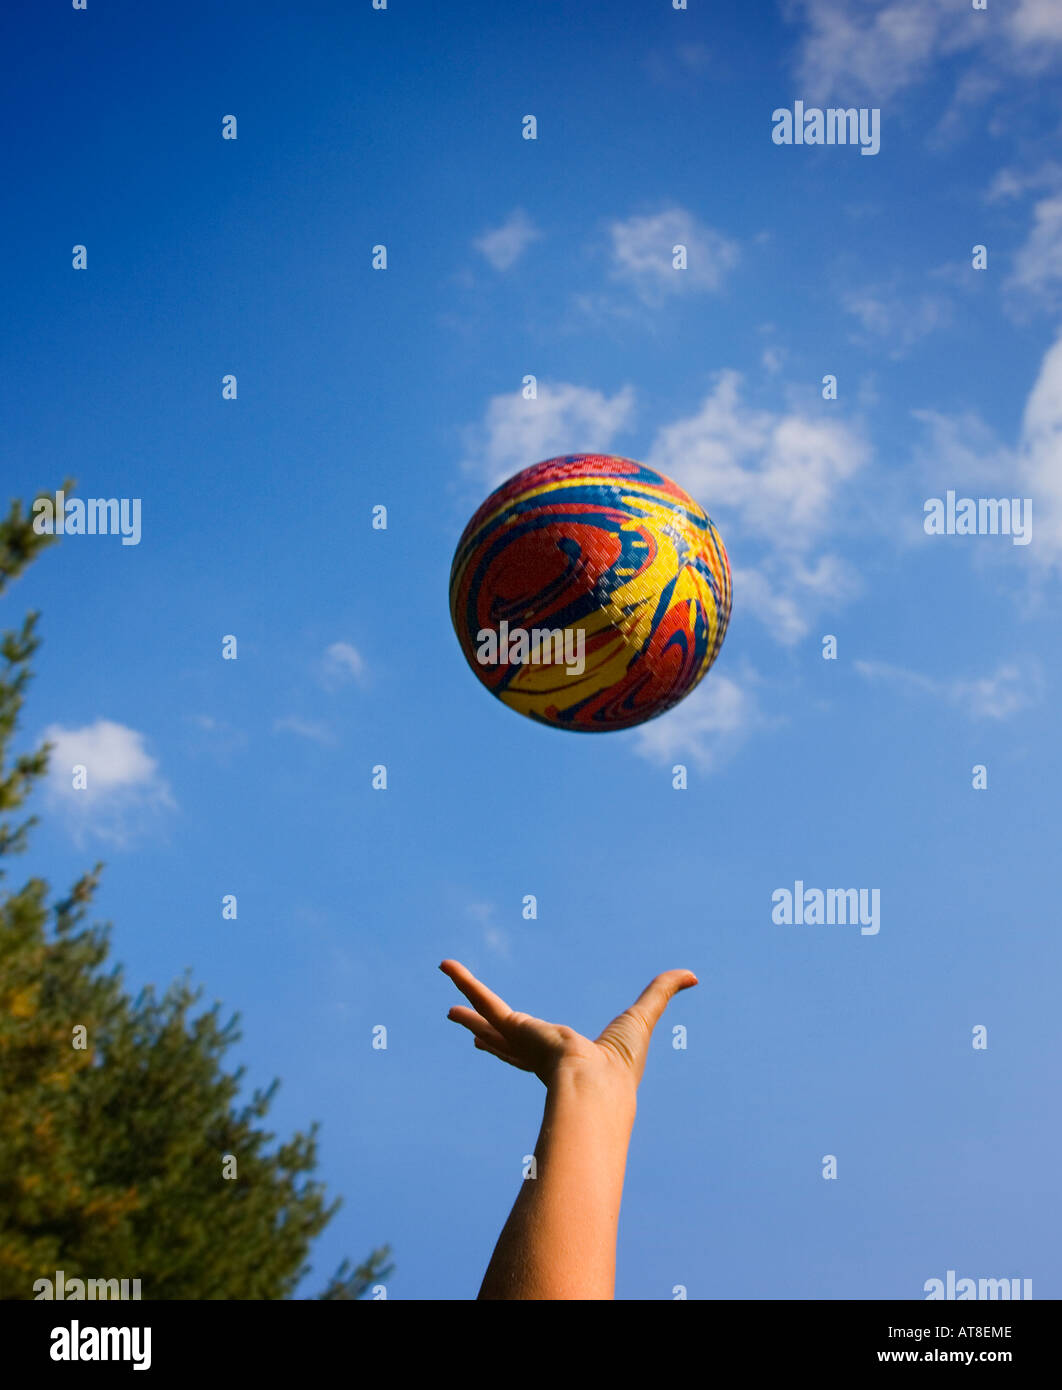 Ball in die Luft geworfen Stockfotografie - Alamy